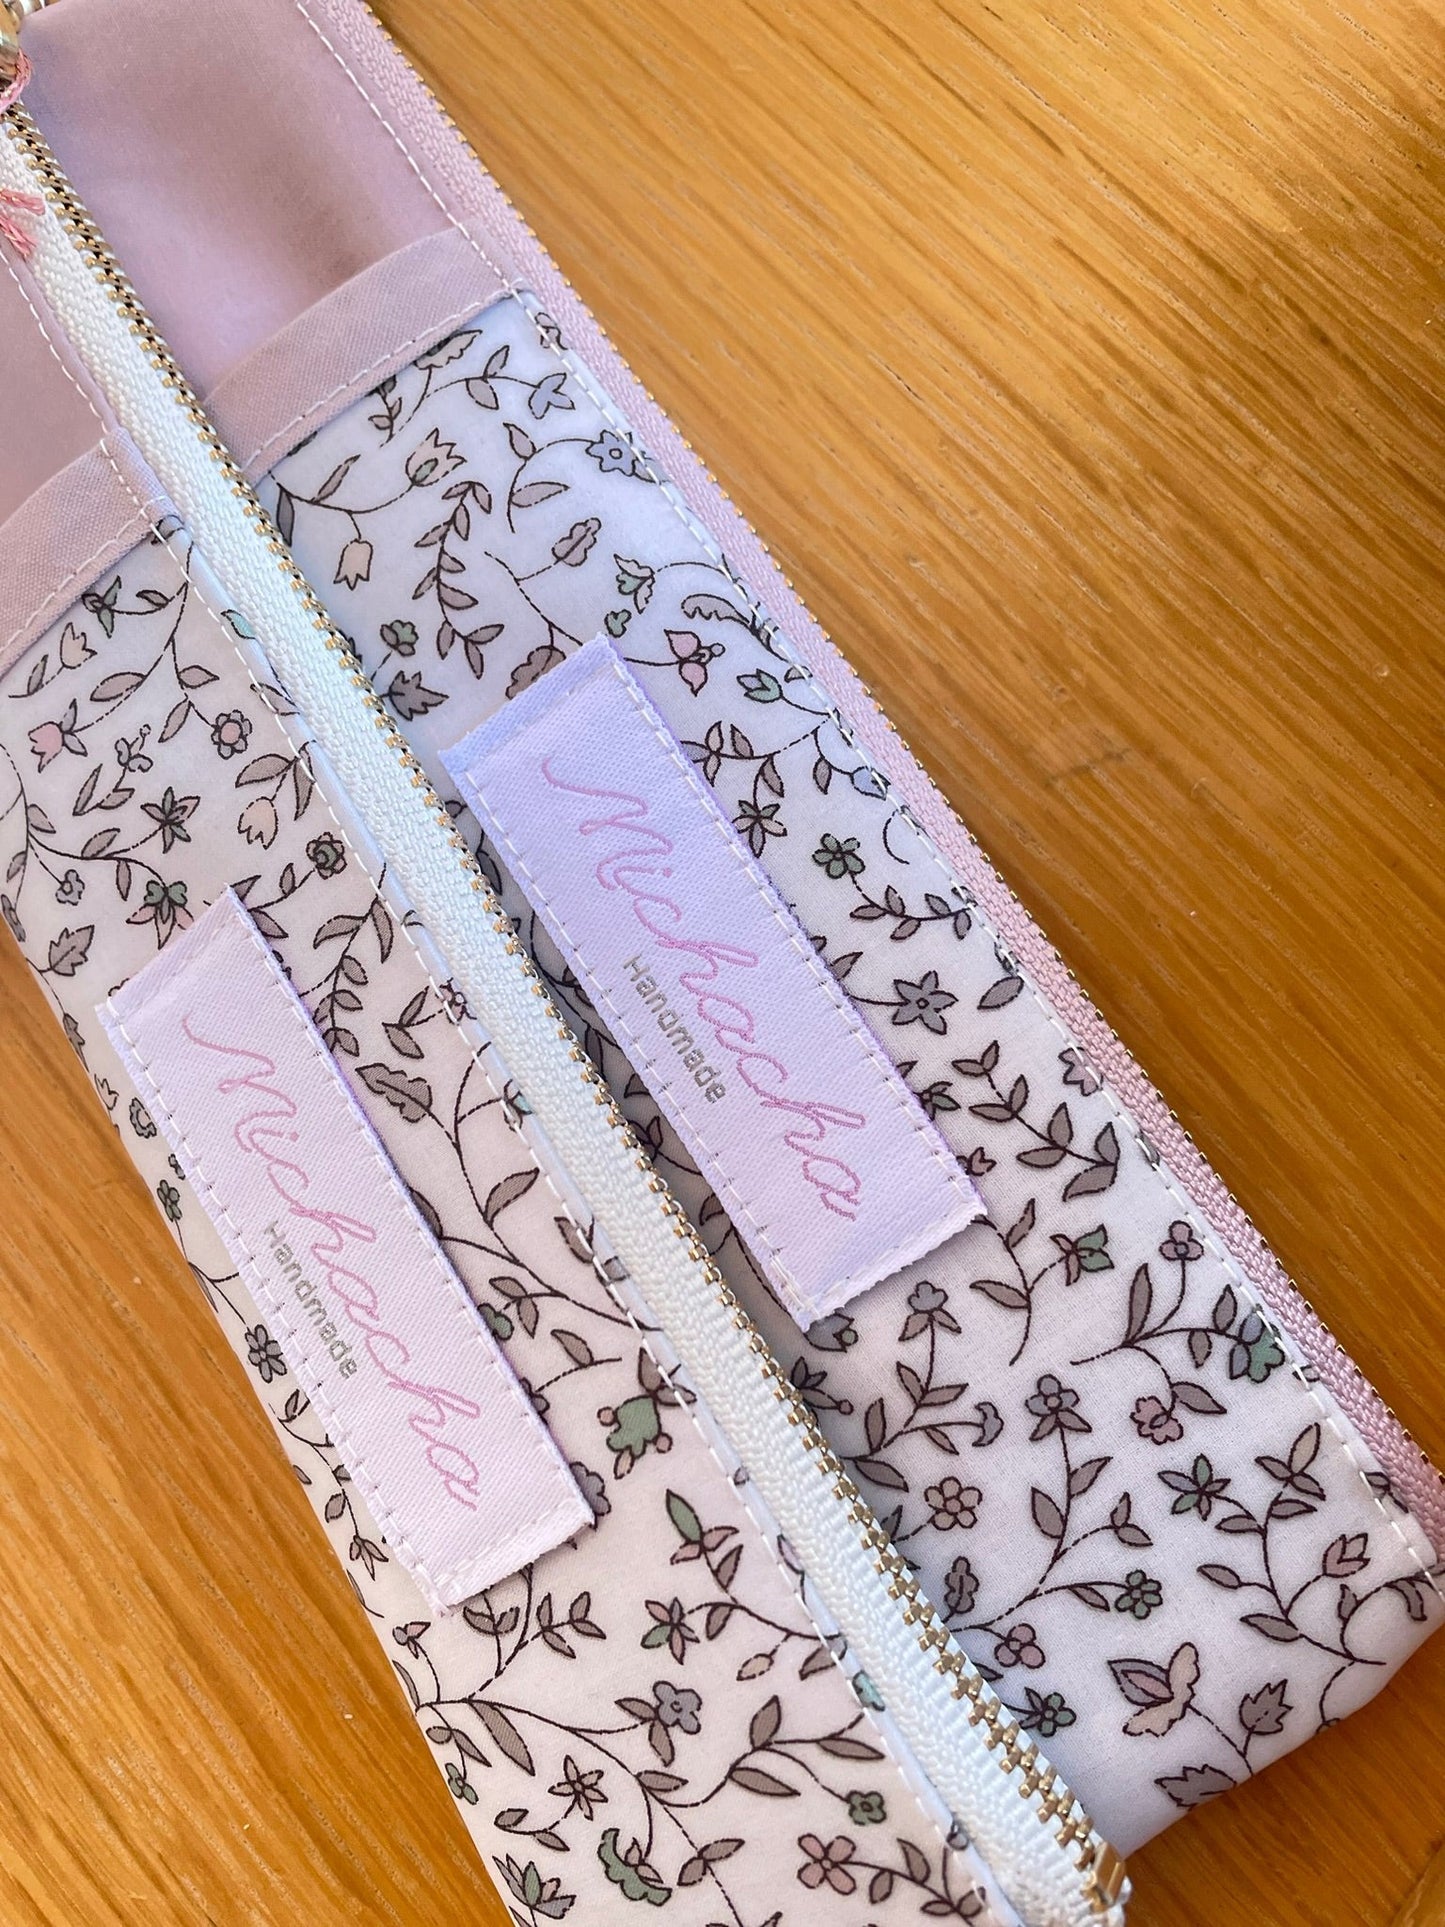 ipan pen case +plus<Water repellent> Cathy/Pink zip